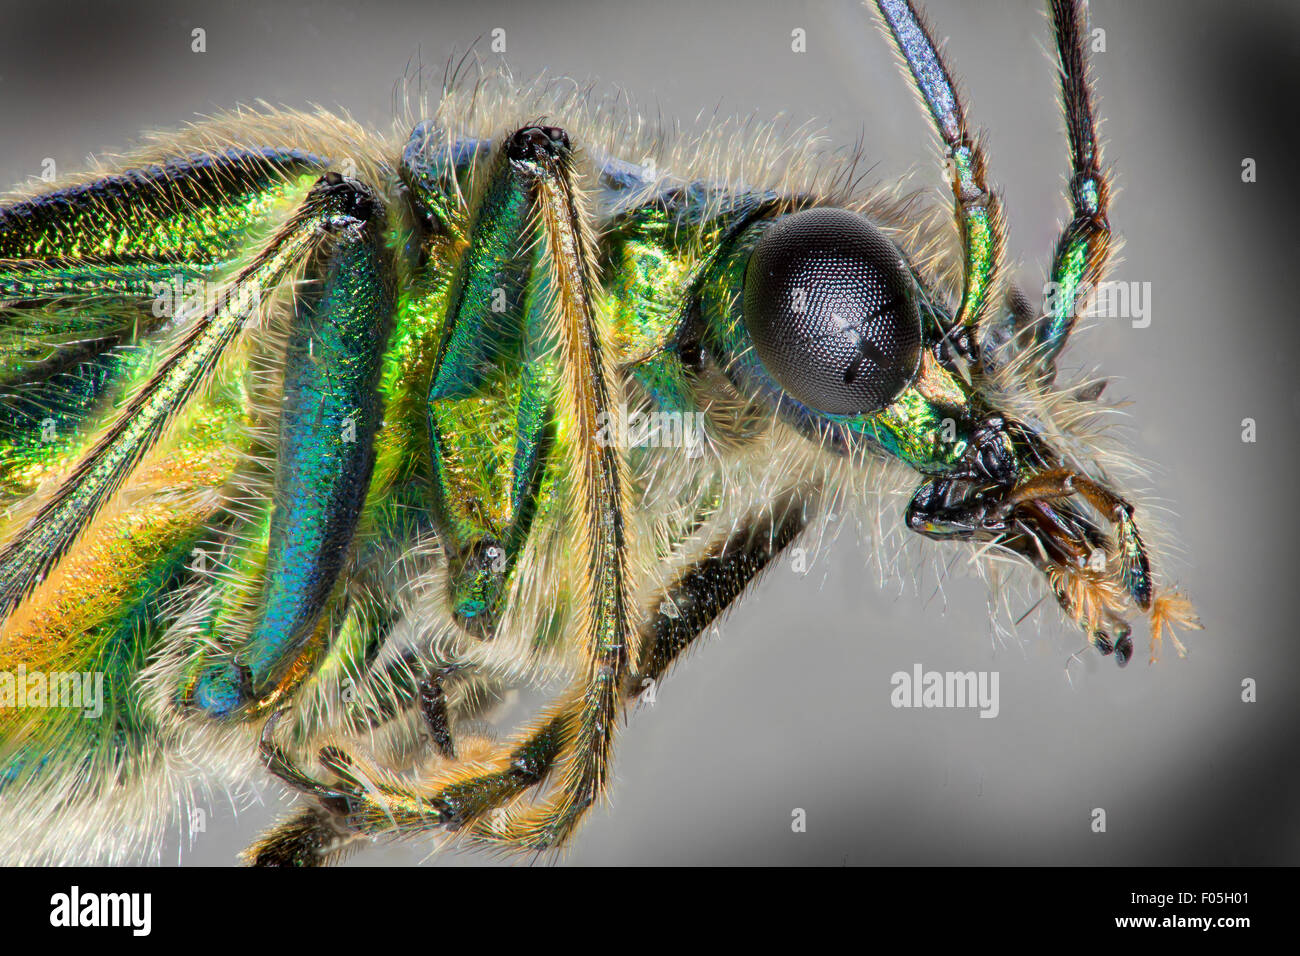 Oedemera nobilis. Flor de patas gruesas escarabajo, Macho. alta la visión macro mostrando iridiscencia verde Foto de stock